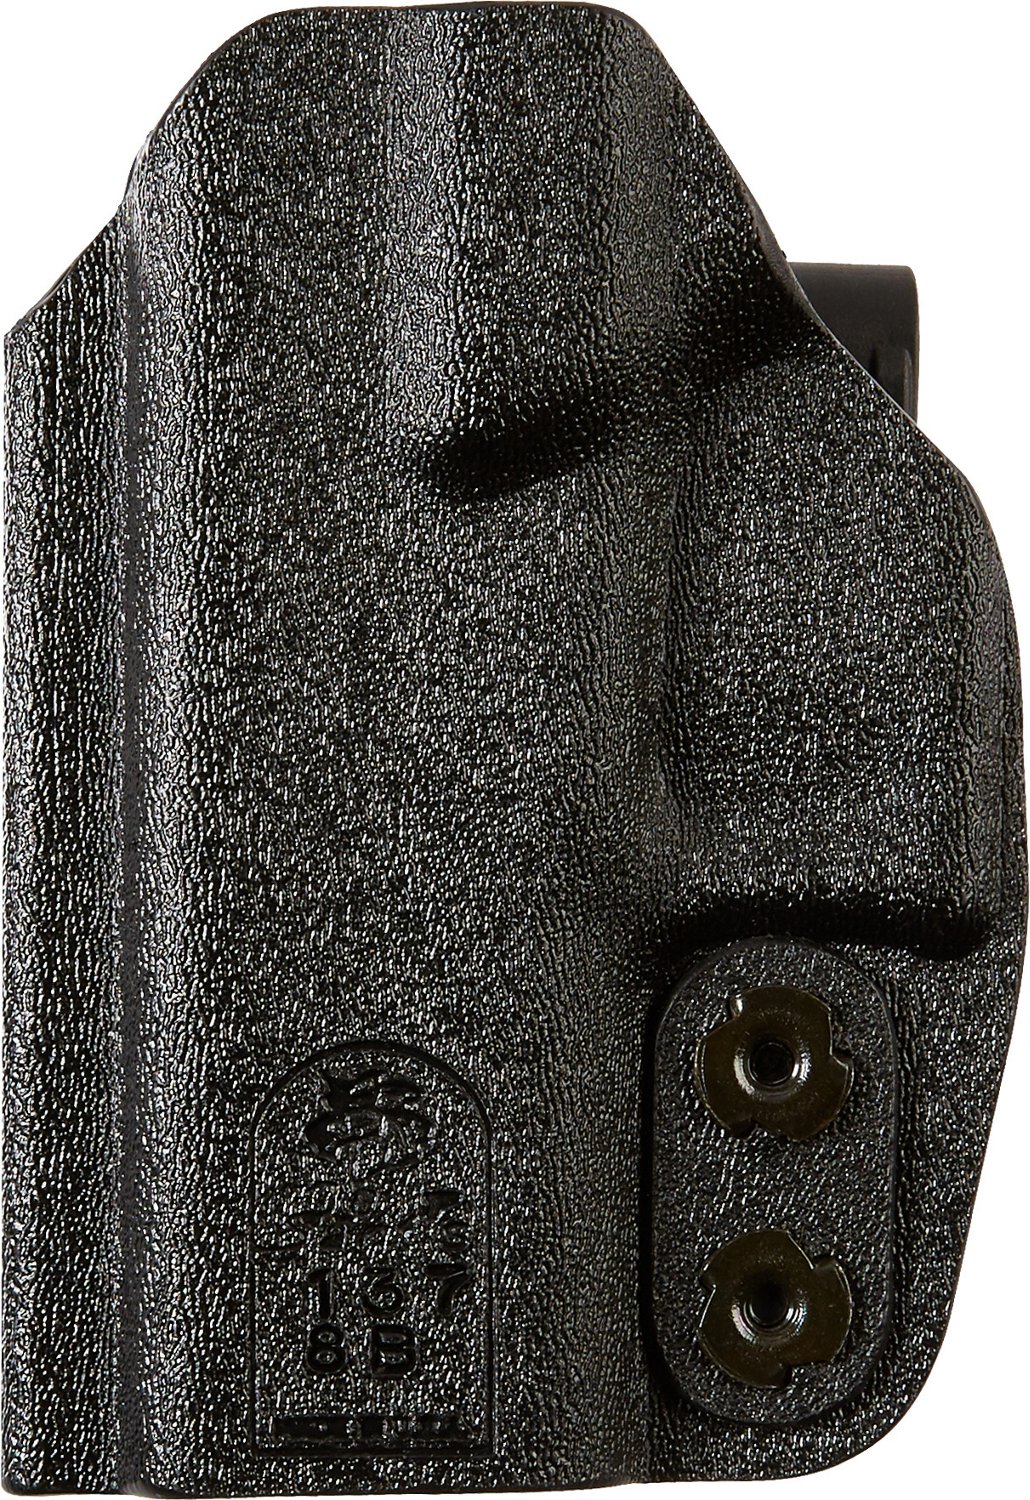 DeSantis Gunhide SLIM-TUK IWB Glock 43 Holster                                                                                   - view number 1 selected